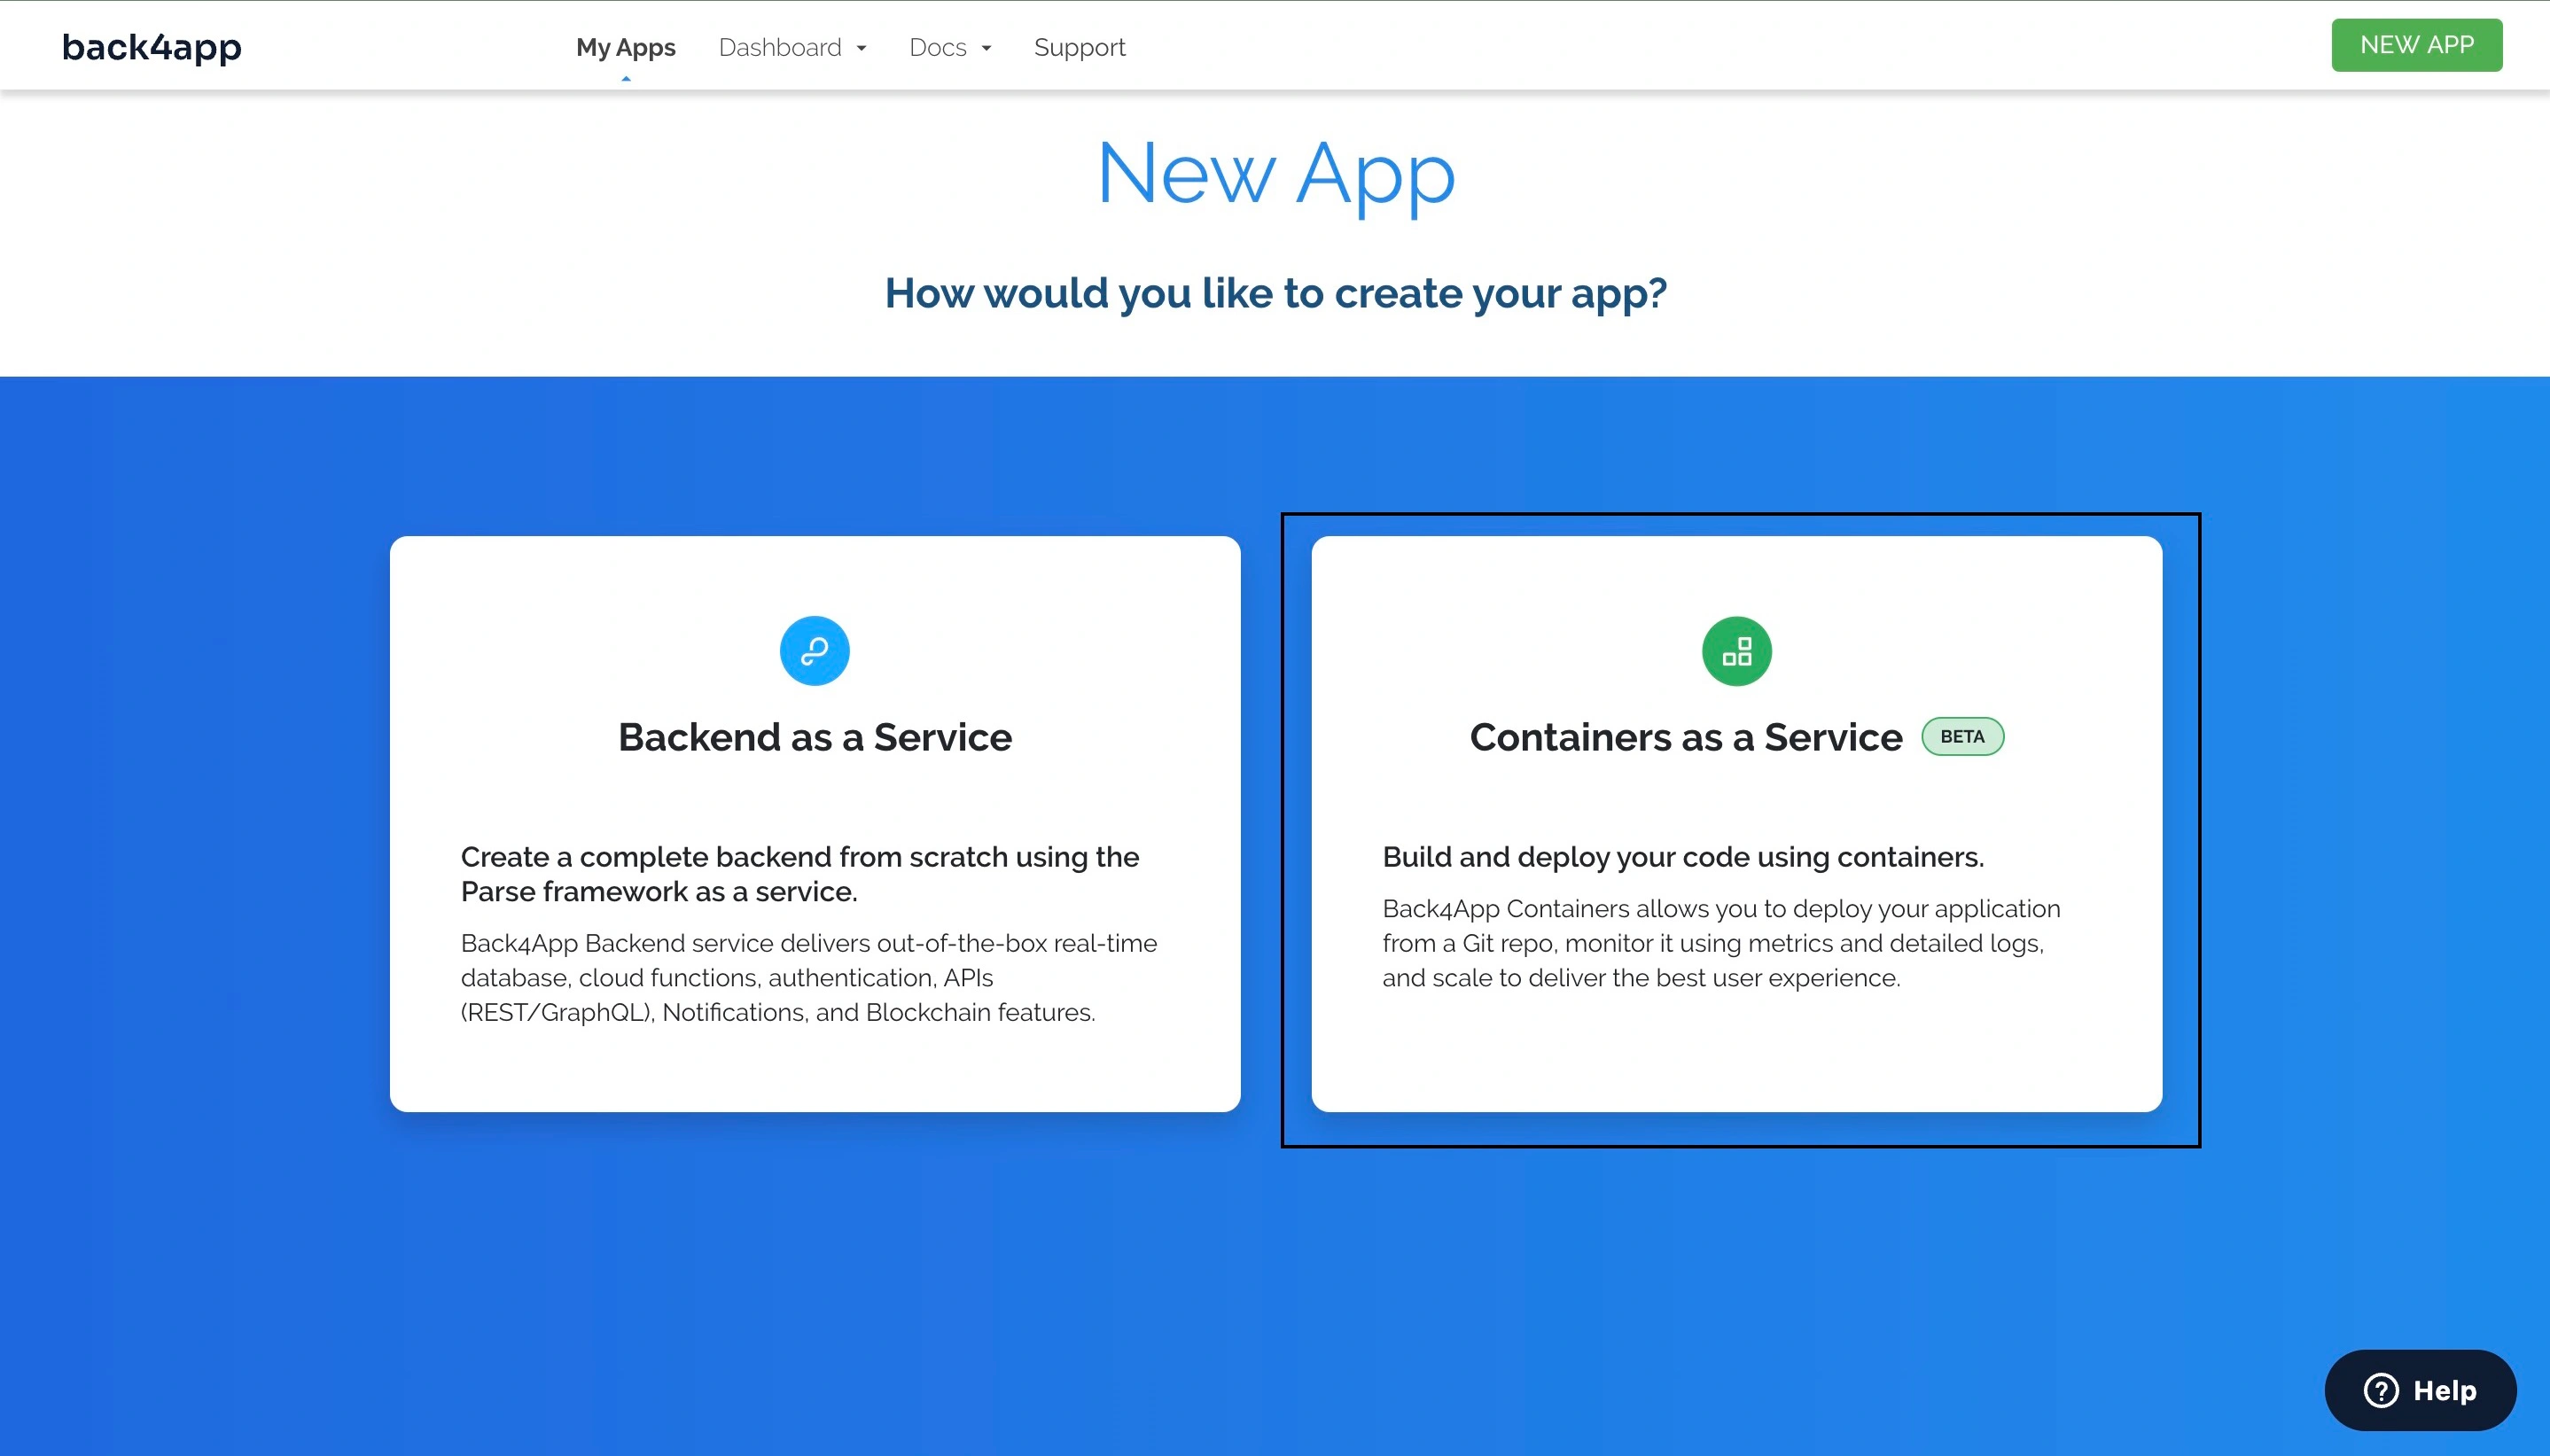 Create a new app on Back4app
